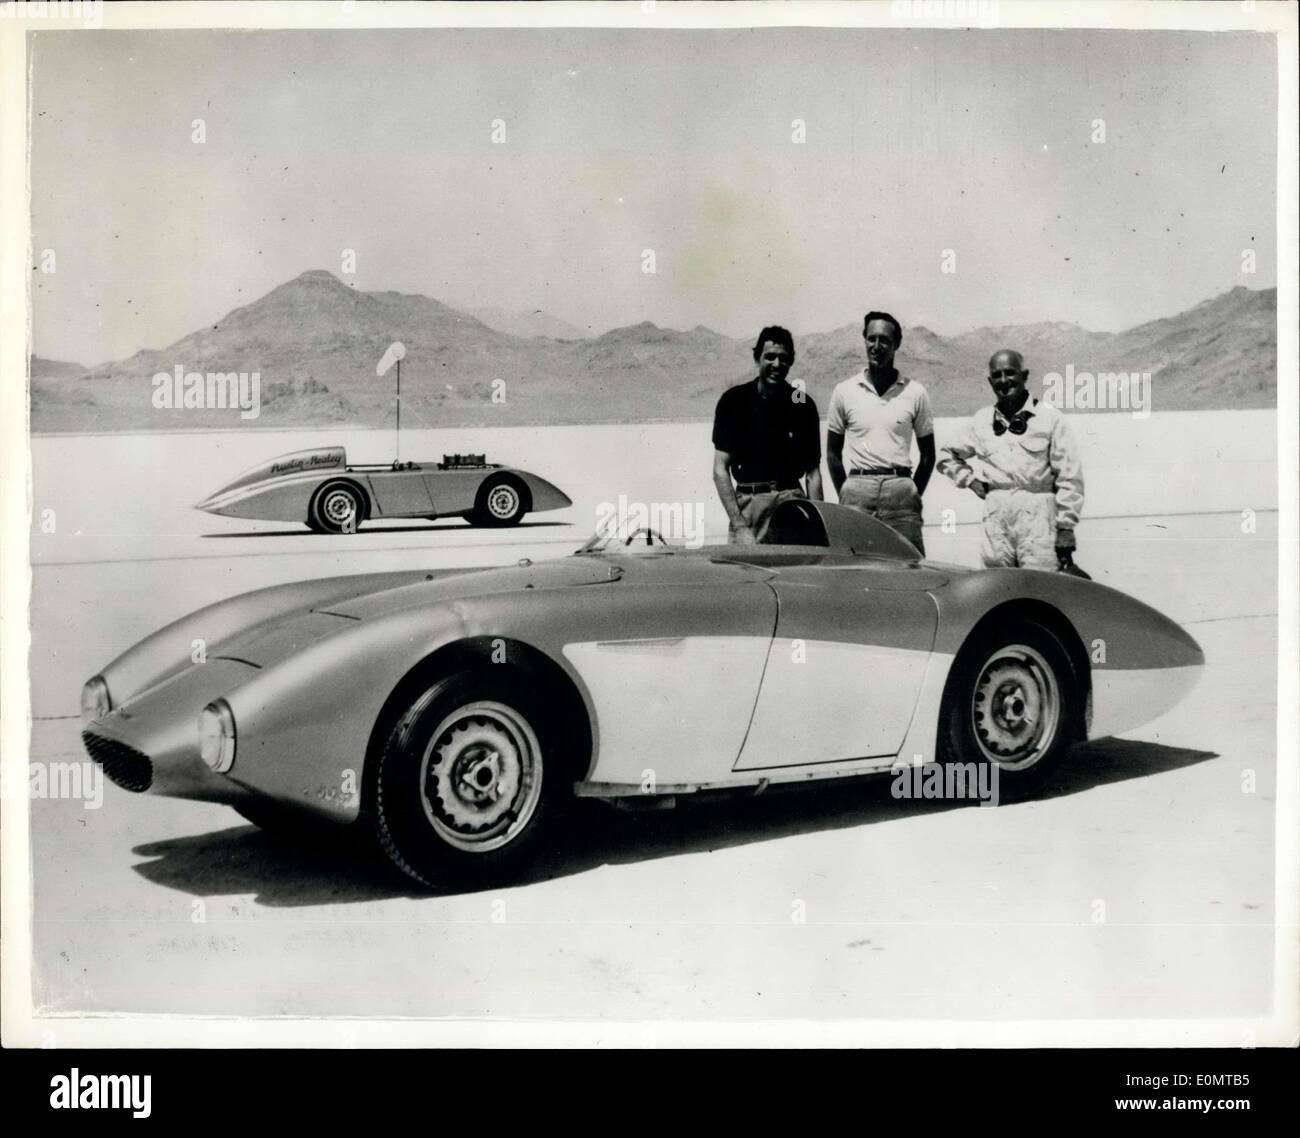 El 17 de agosto, 1956 - 16 años Austin-Healey rompe récords de velocidad en Bonneville Venta apartamentos lago. El Sr. Roy Jackson-Moore de Los Angeles al volante de este modificado recientemente internatinoal Austin-Healey cien rompió la clase 'D' y American Records en Bonneville Salt Flats, en Utah, EE.UU., el coche cubierto de 200 millas a 152.51 m.p.h y 500 kilómetros en 1940. El coche es básicamente un estándar Austin Healey cientos de chasis y carrocería, ligeramente modificado para adaptarlo a un monoplaza y mejorar optimizar características. El coche está equipado con frenos de disco Dunlop, disco de las ruedas y los neumáticos de alta velocidad Foto de stock